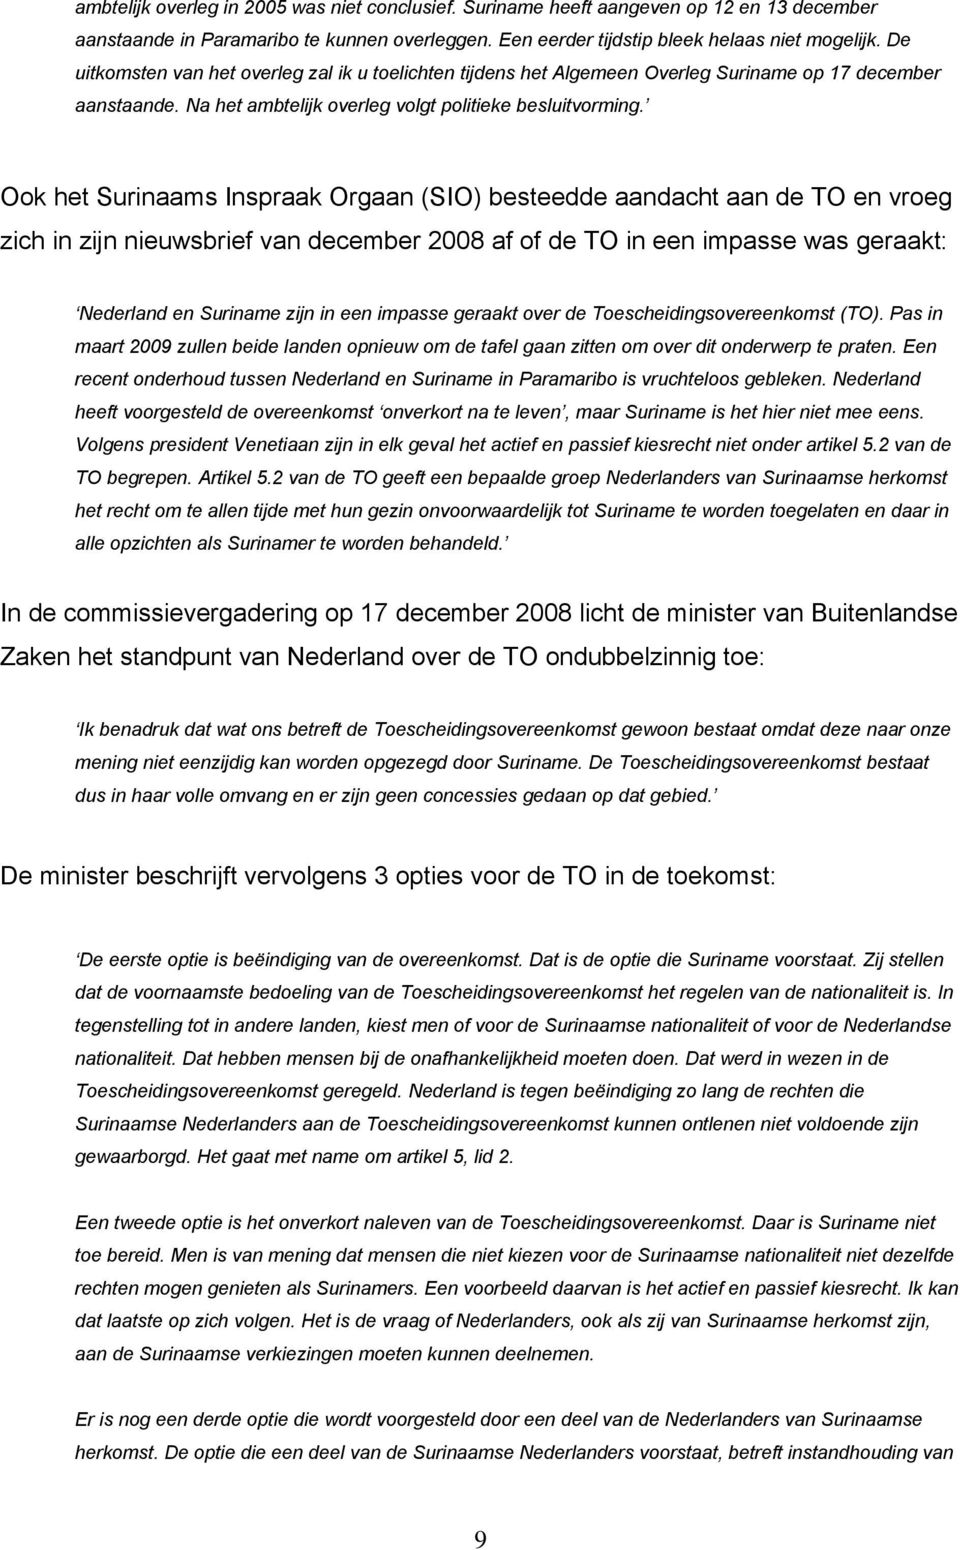 Ook het Surinaams Inspraak Orgaan (SIO) besteedde aandacht aan de TO en vroeg zich in zijn nieuwsbrief van december 2008 af of de TO in een impasse was geraakt: Nederland en Suriname zijn in een